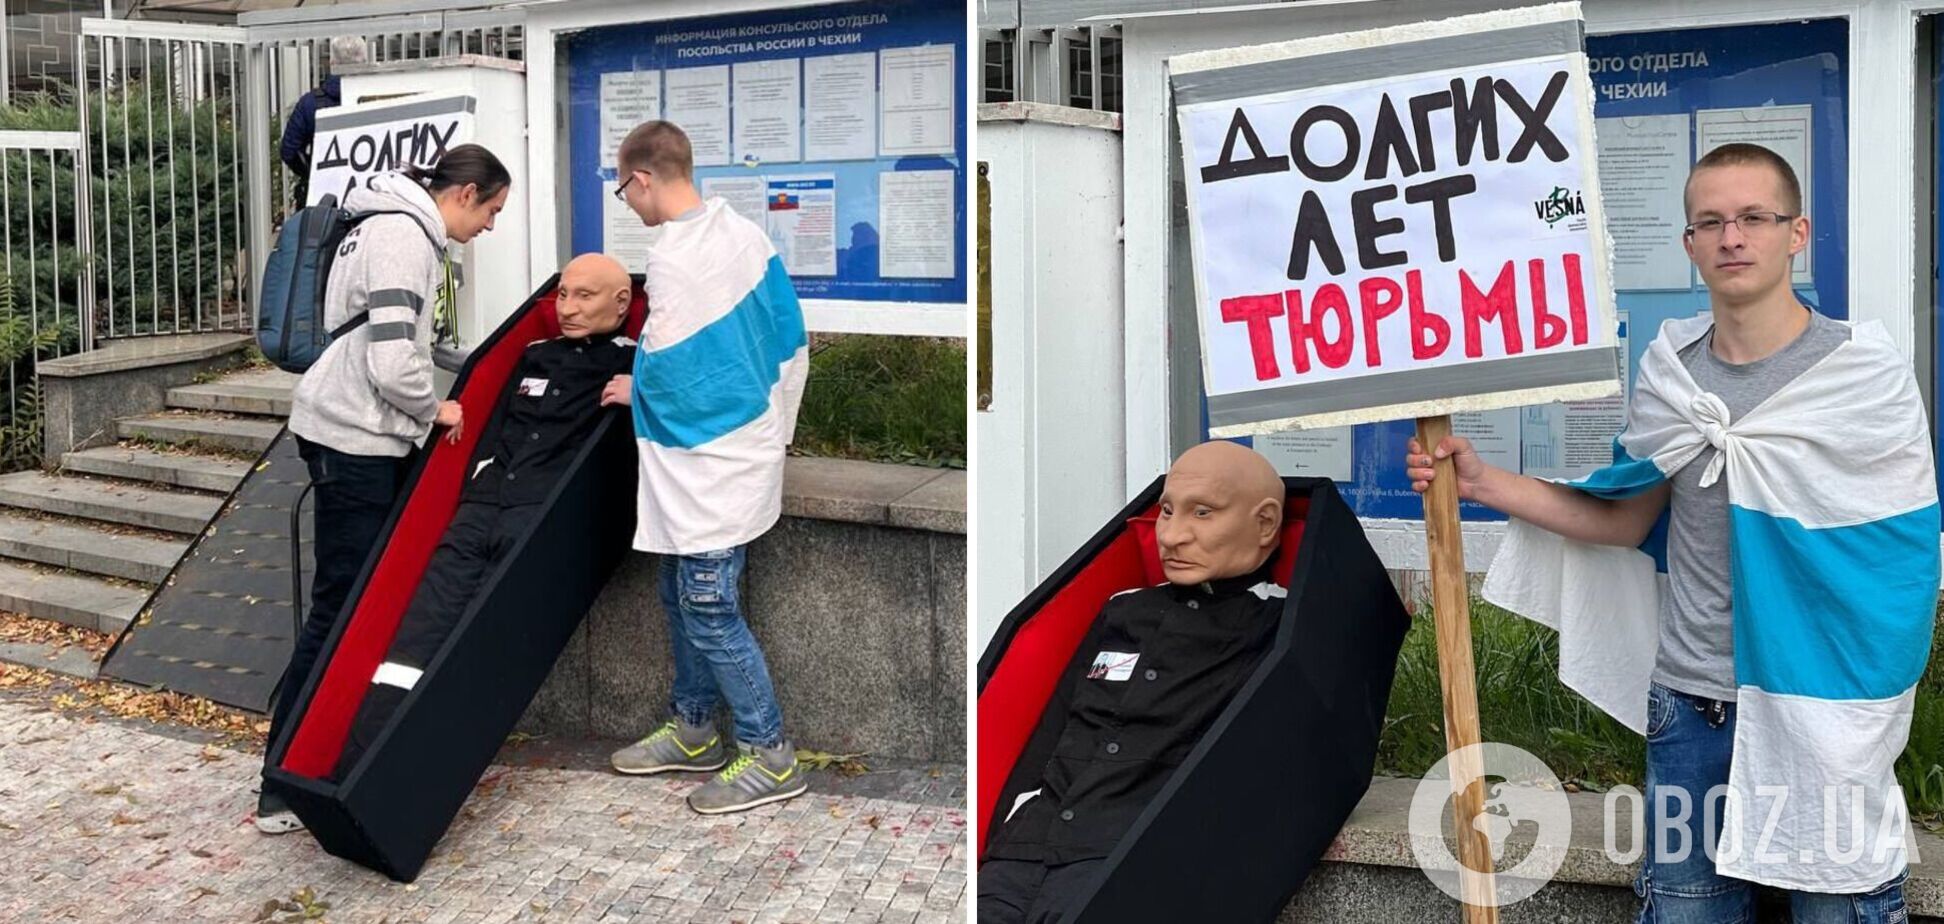 'Долгих лет тюрьмы': в Праге активисты провели смелую акцию у посольства РФ ко дню рождения Путина. Фото и видео